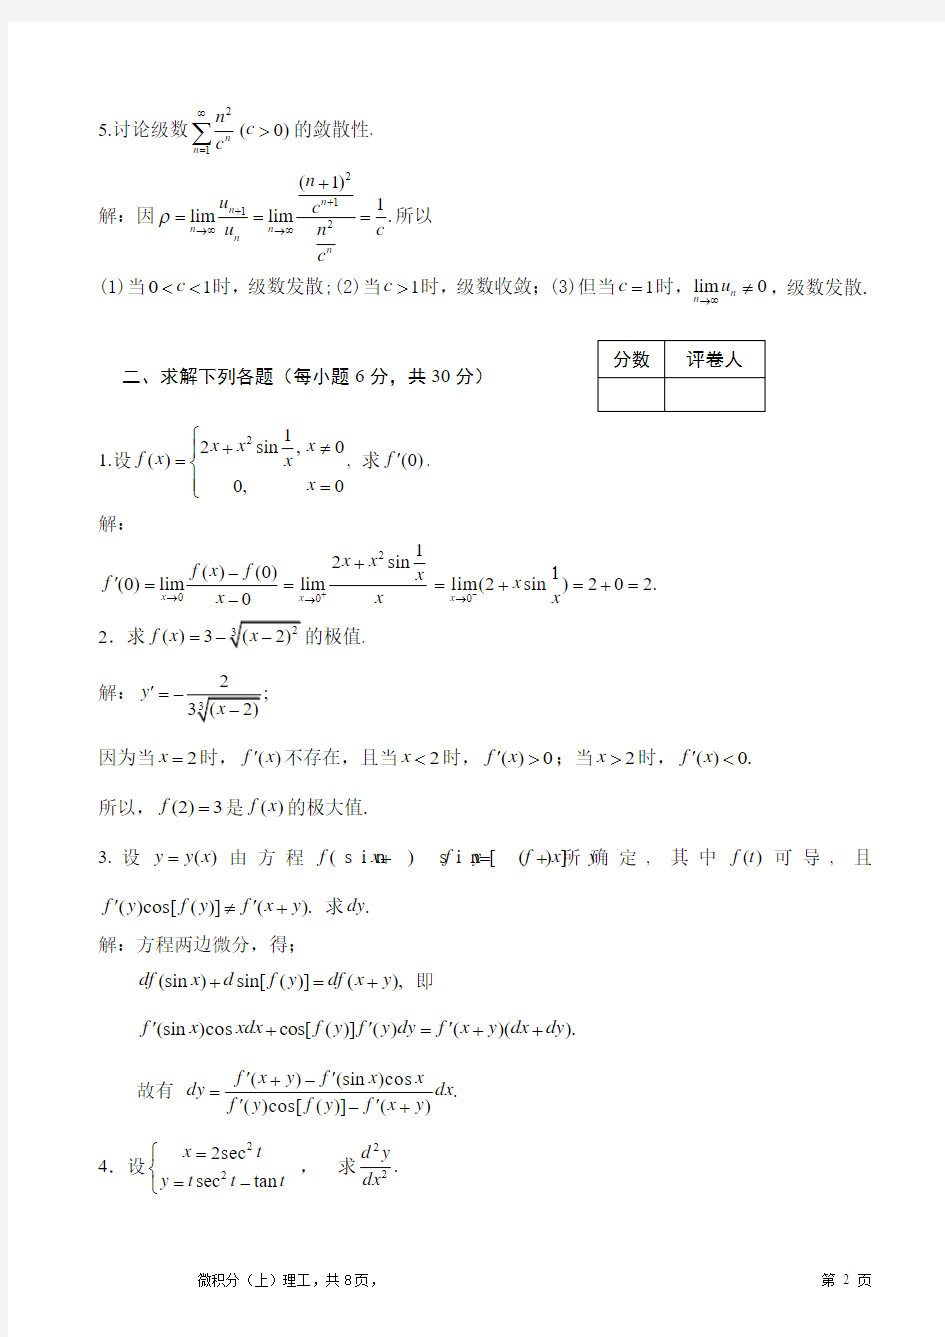 2009级 高等数学(上)理工课程试题(A)及其参考答案